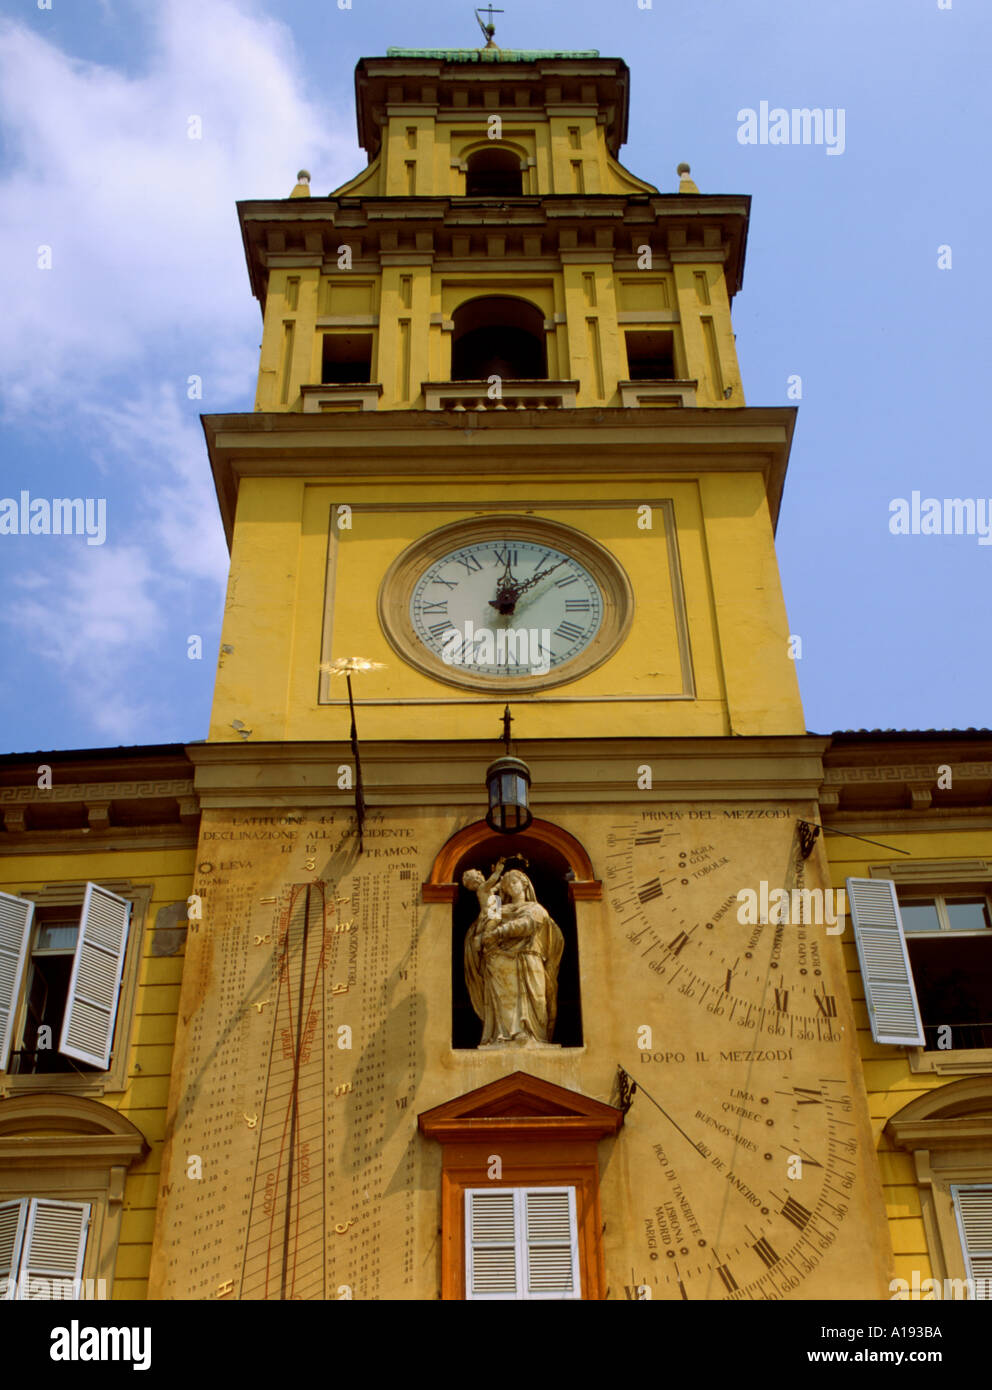 Italy Emilia Romagna Parma Garibaldi square Stock Photo